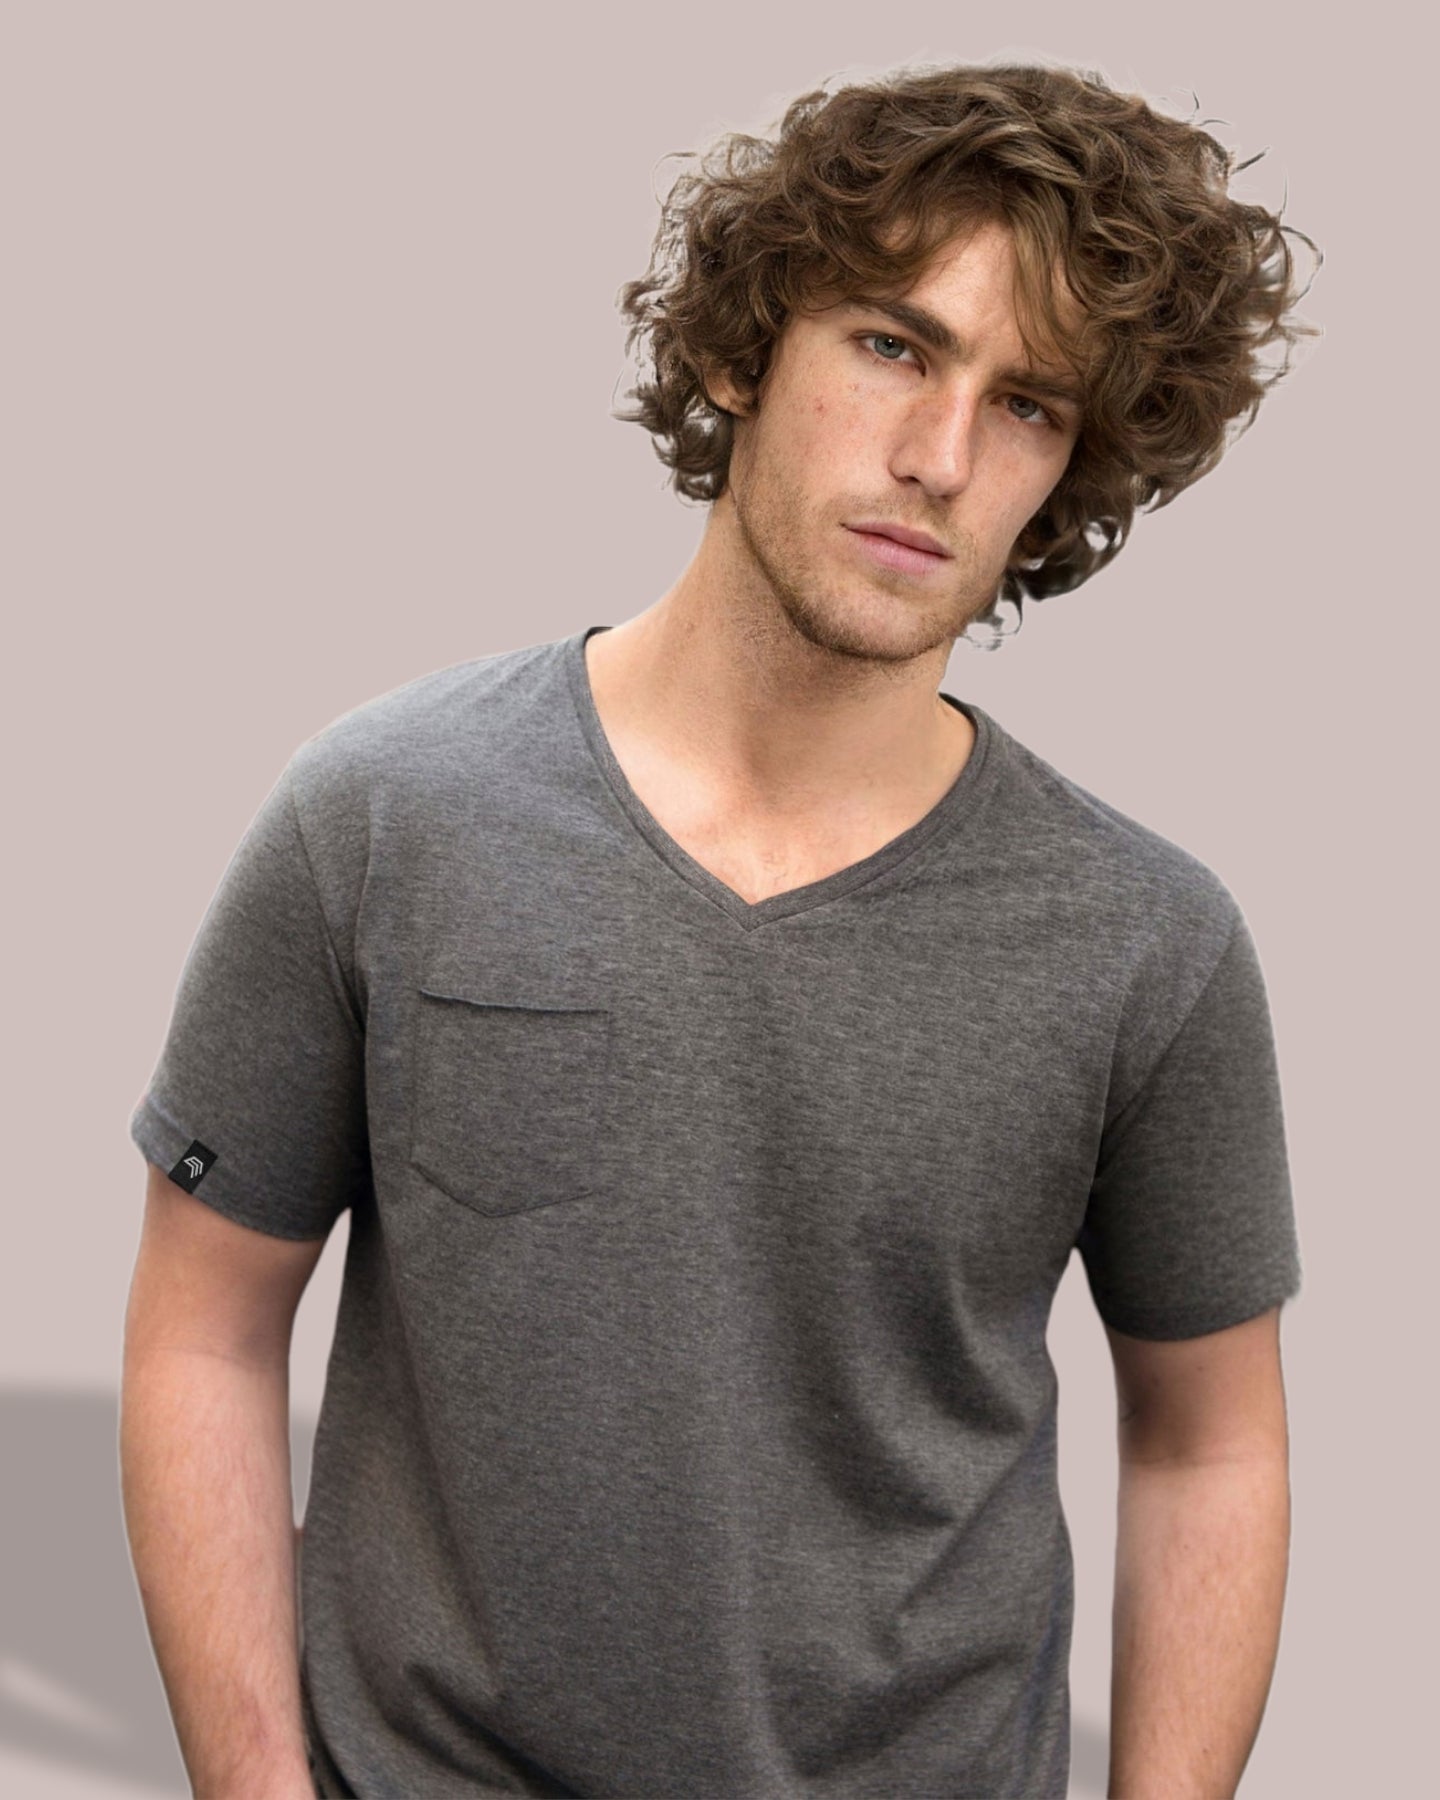 ― % ― JAN 8004 ― Bio-Baumwolle V-Neck T-Shirt mit Brusttasche - Navy Blau [3XL]